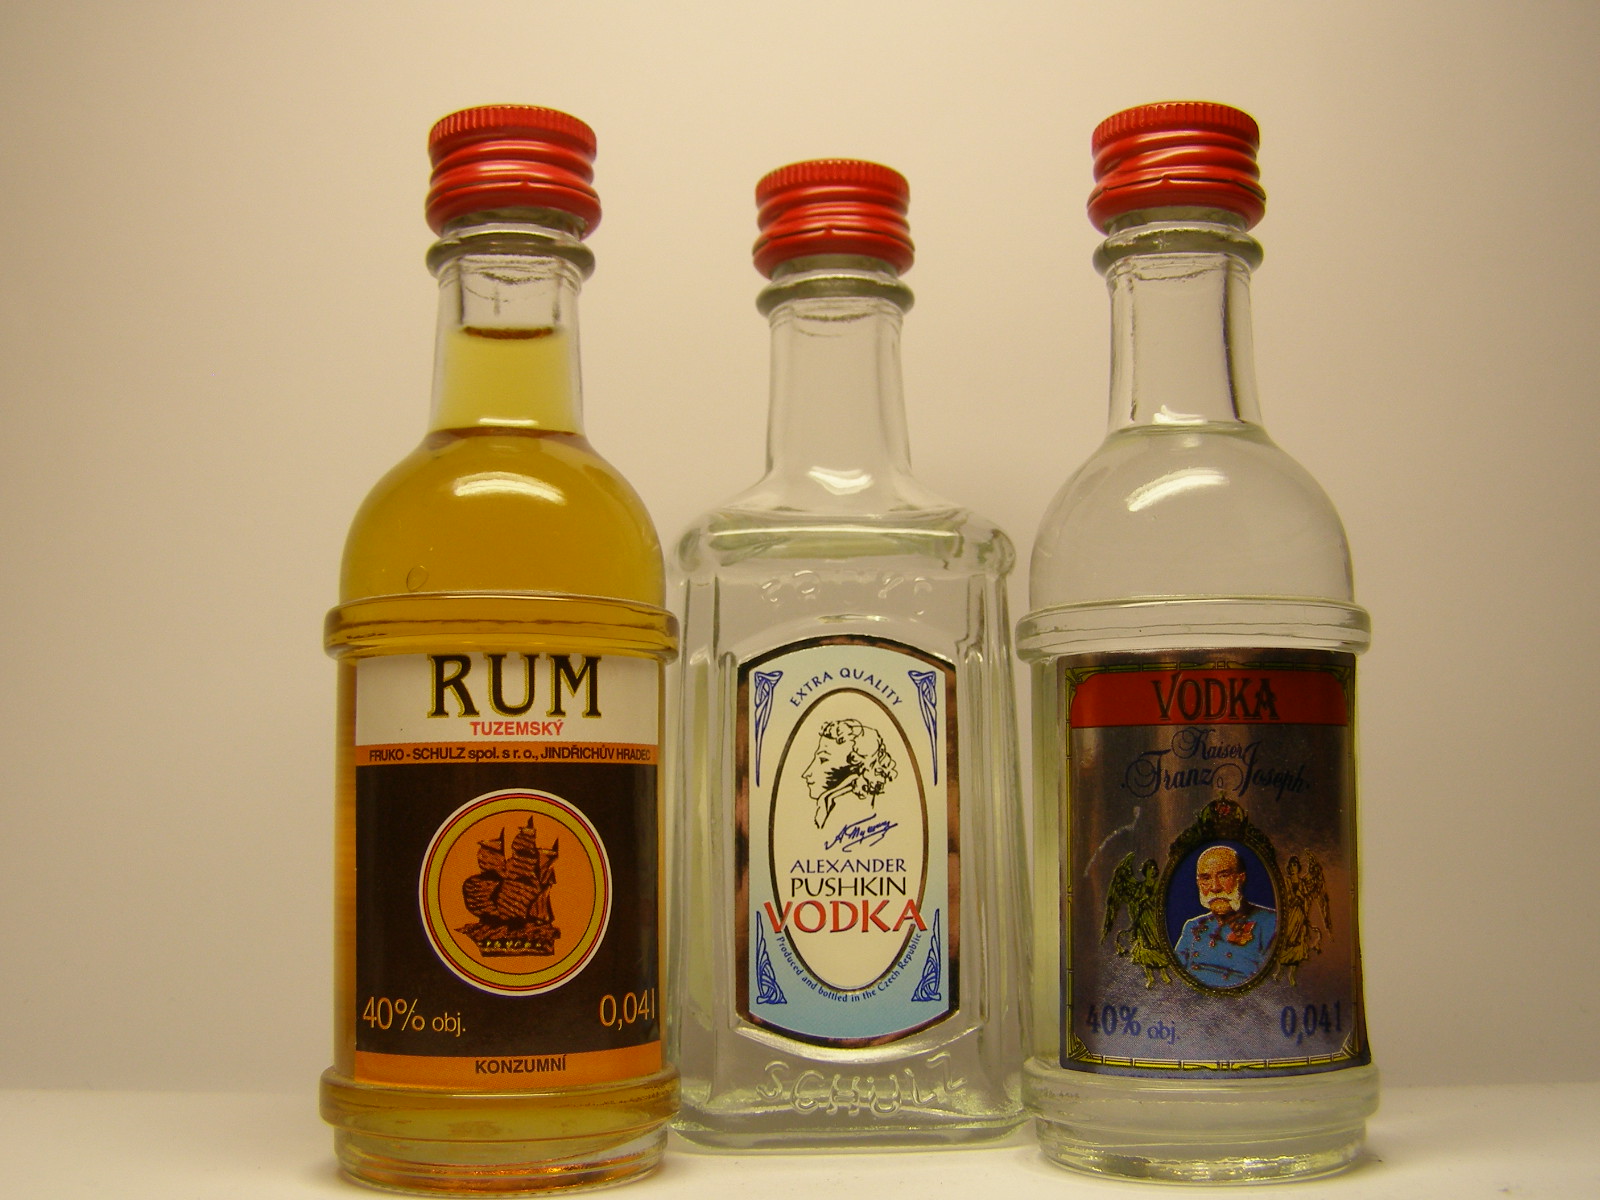 FRUKO-SCHULZ Rum Tuzemský - Alex.Pushkin Vodka - Kaiser Franz Joseph Vodka